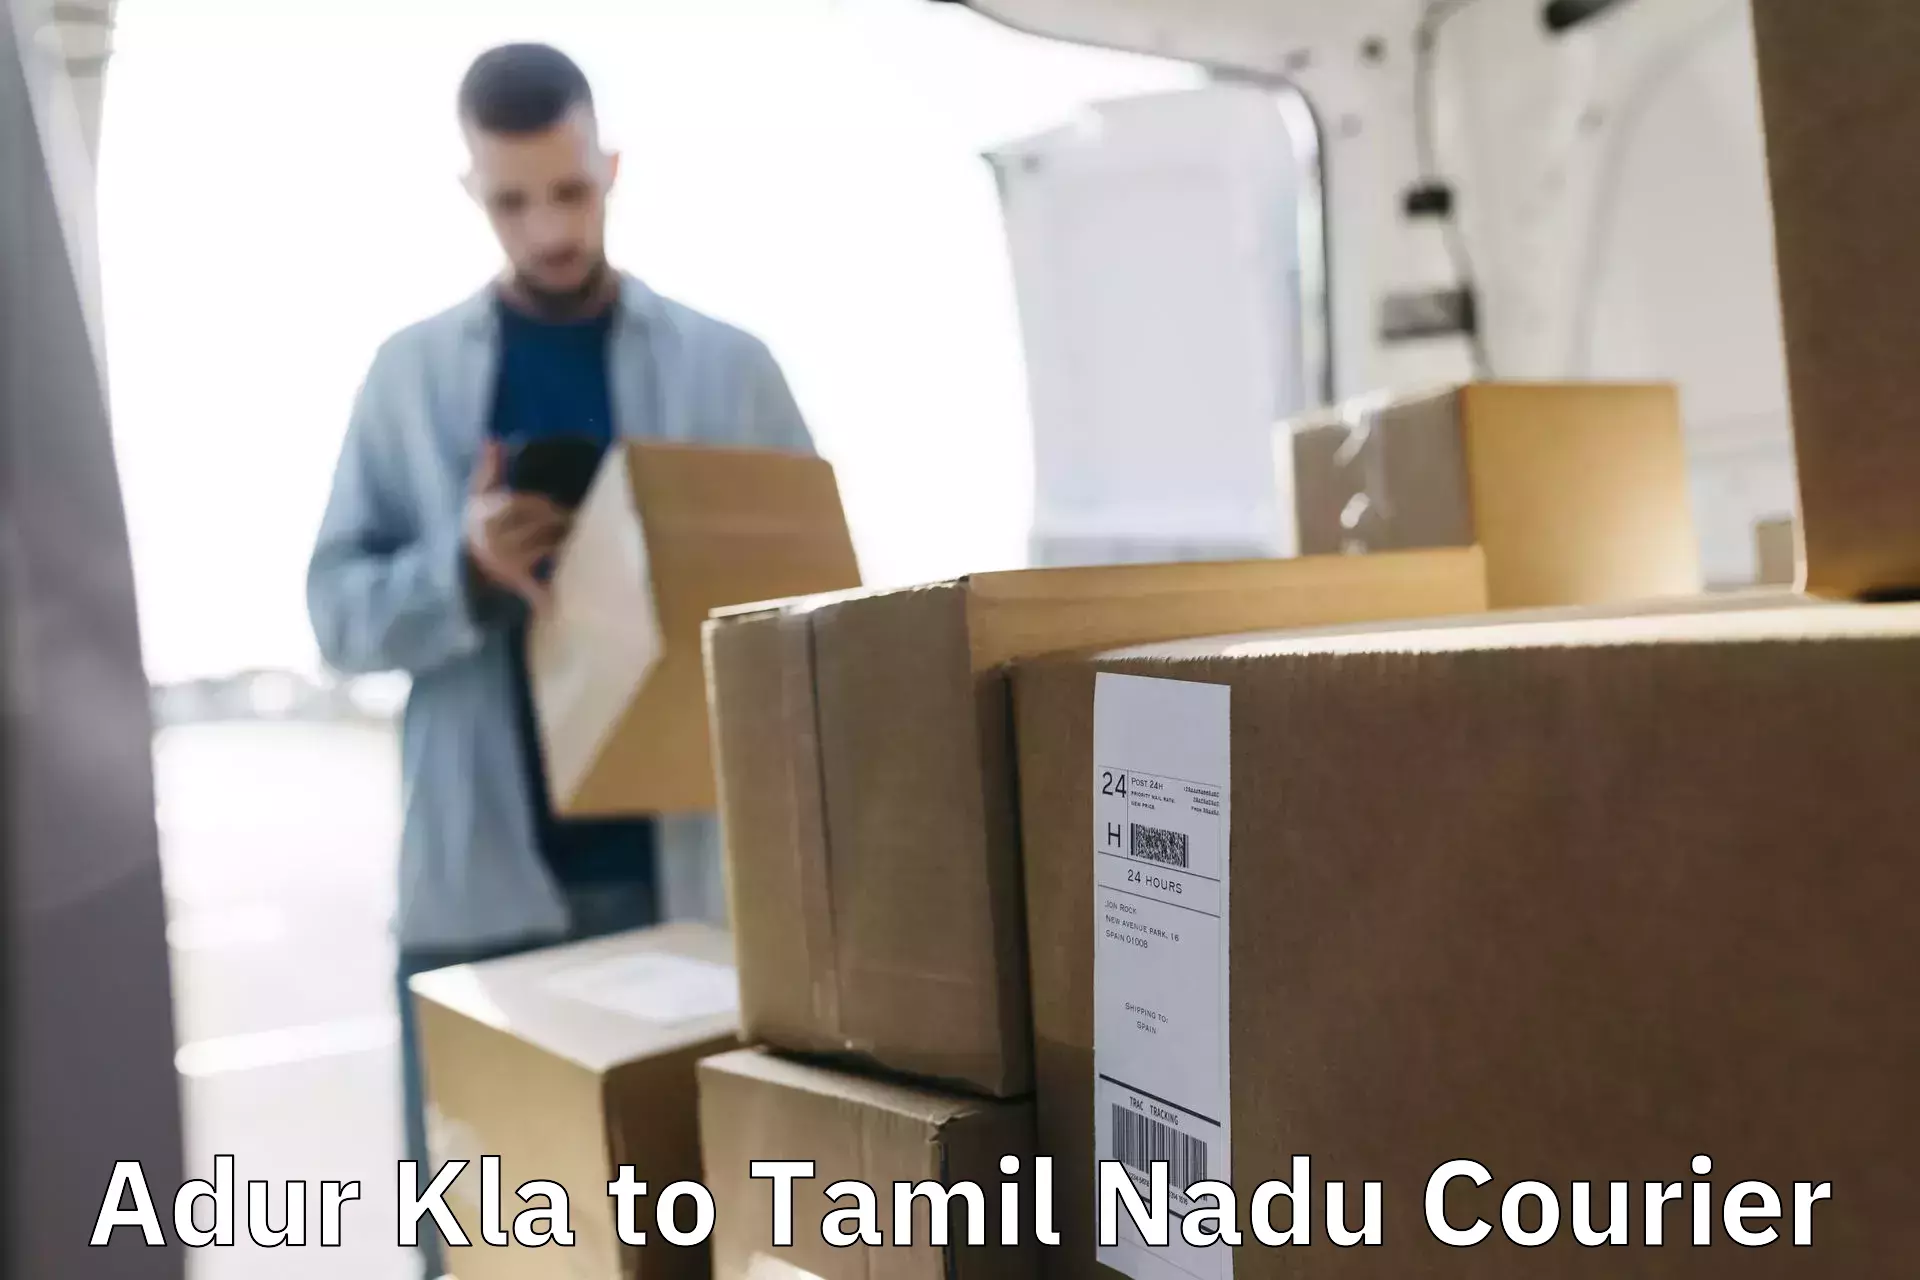 Lightweight parcel options Adur Kla to Tamil Nadu